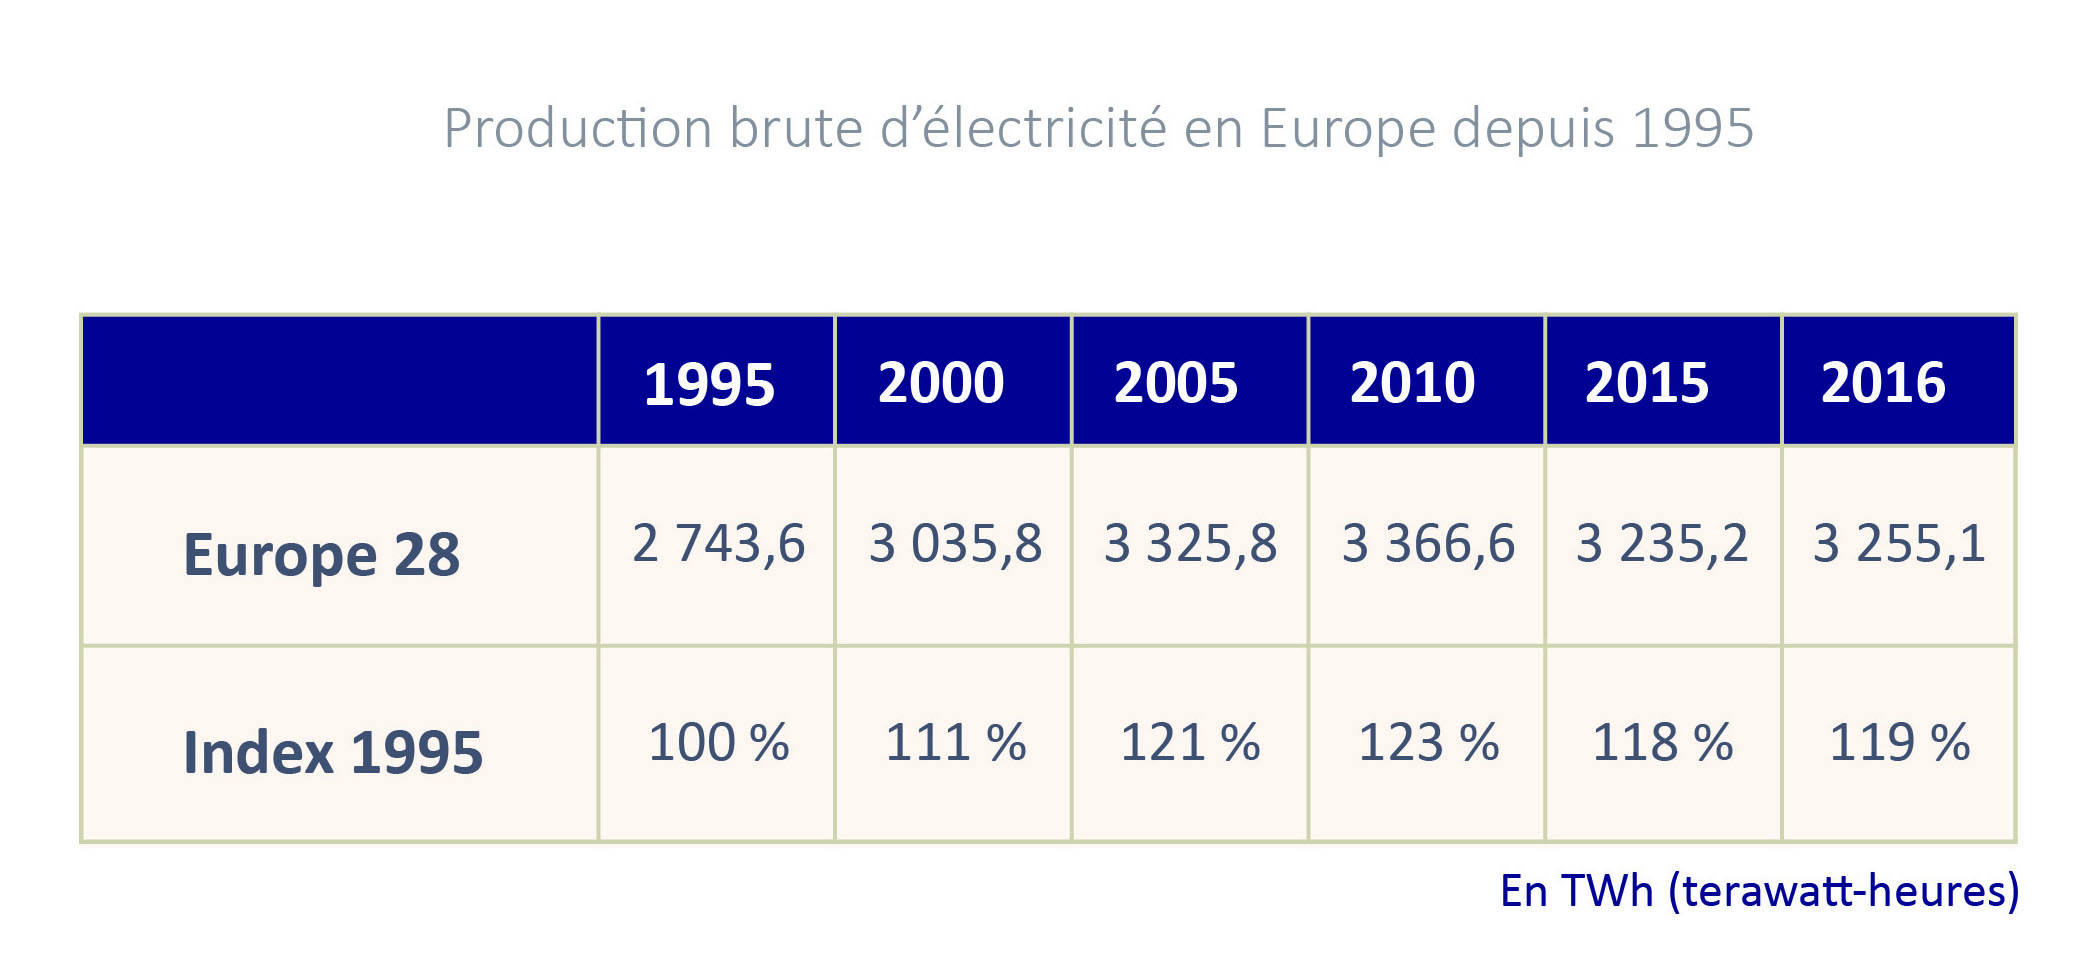 Tableau de la production brute d’électricité dans l‘Union européenne depuis 1995 